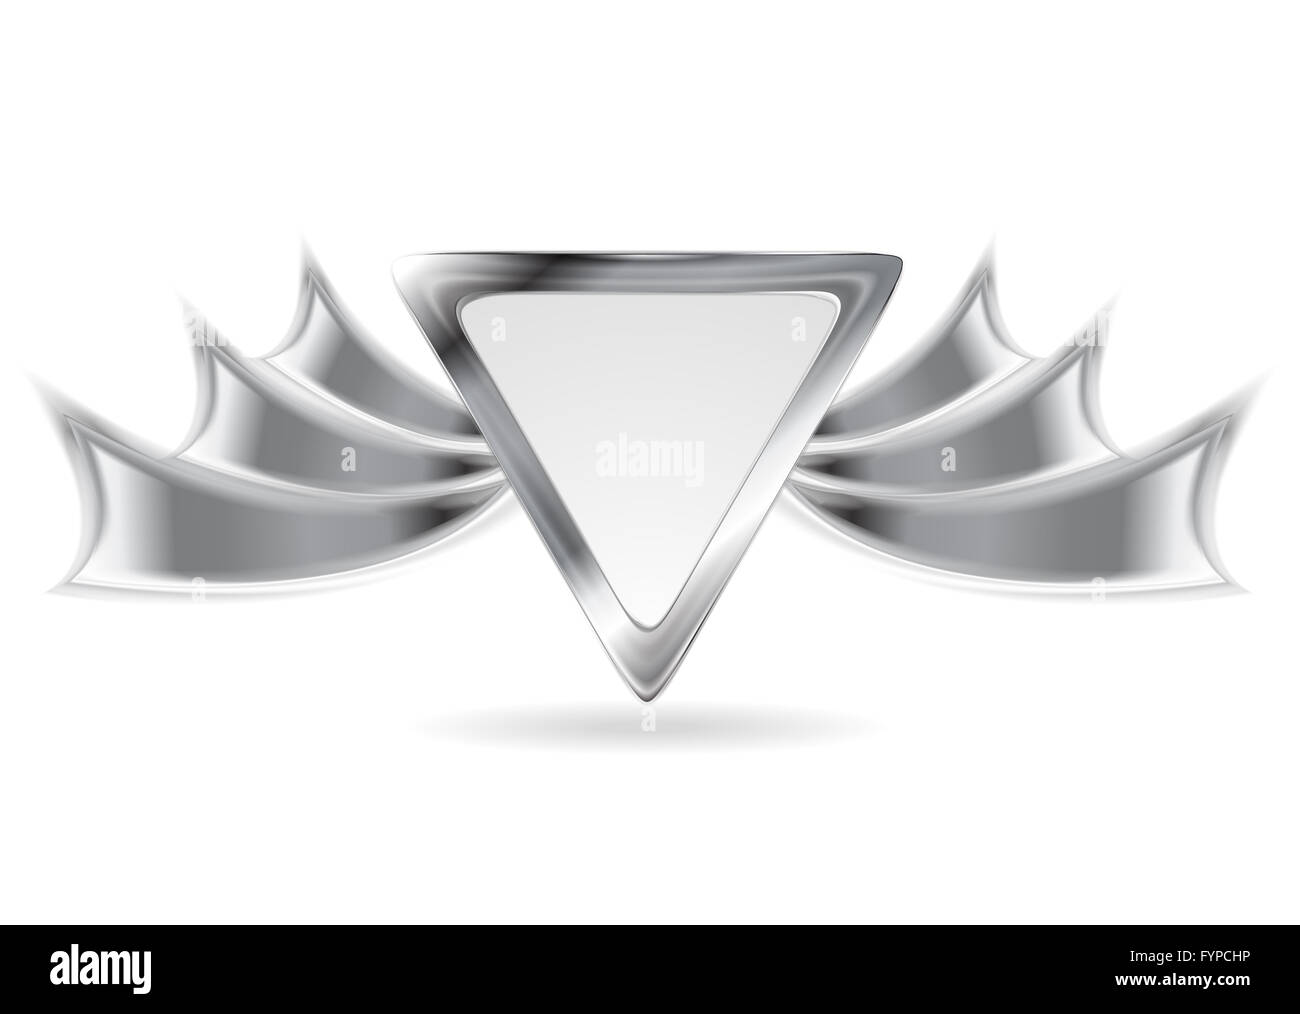 Logo argento immagini e fotografie stock ad alta risoluzione - Alamy